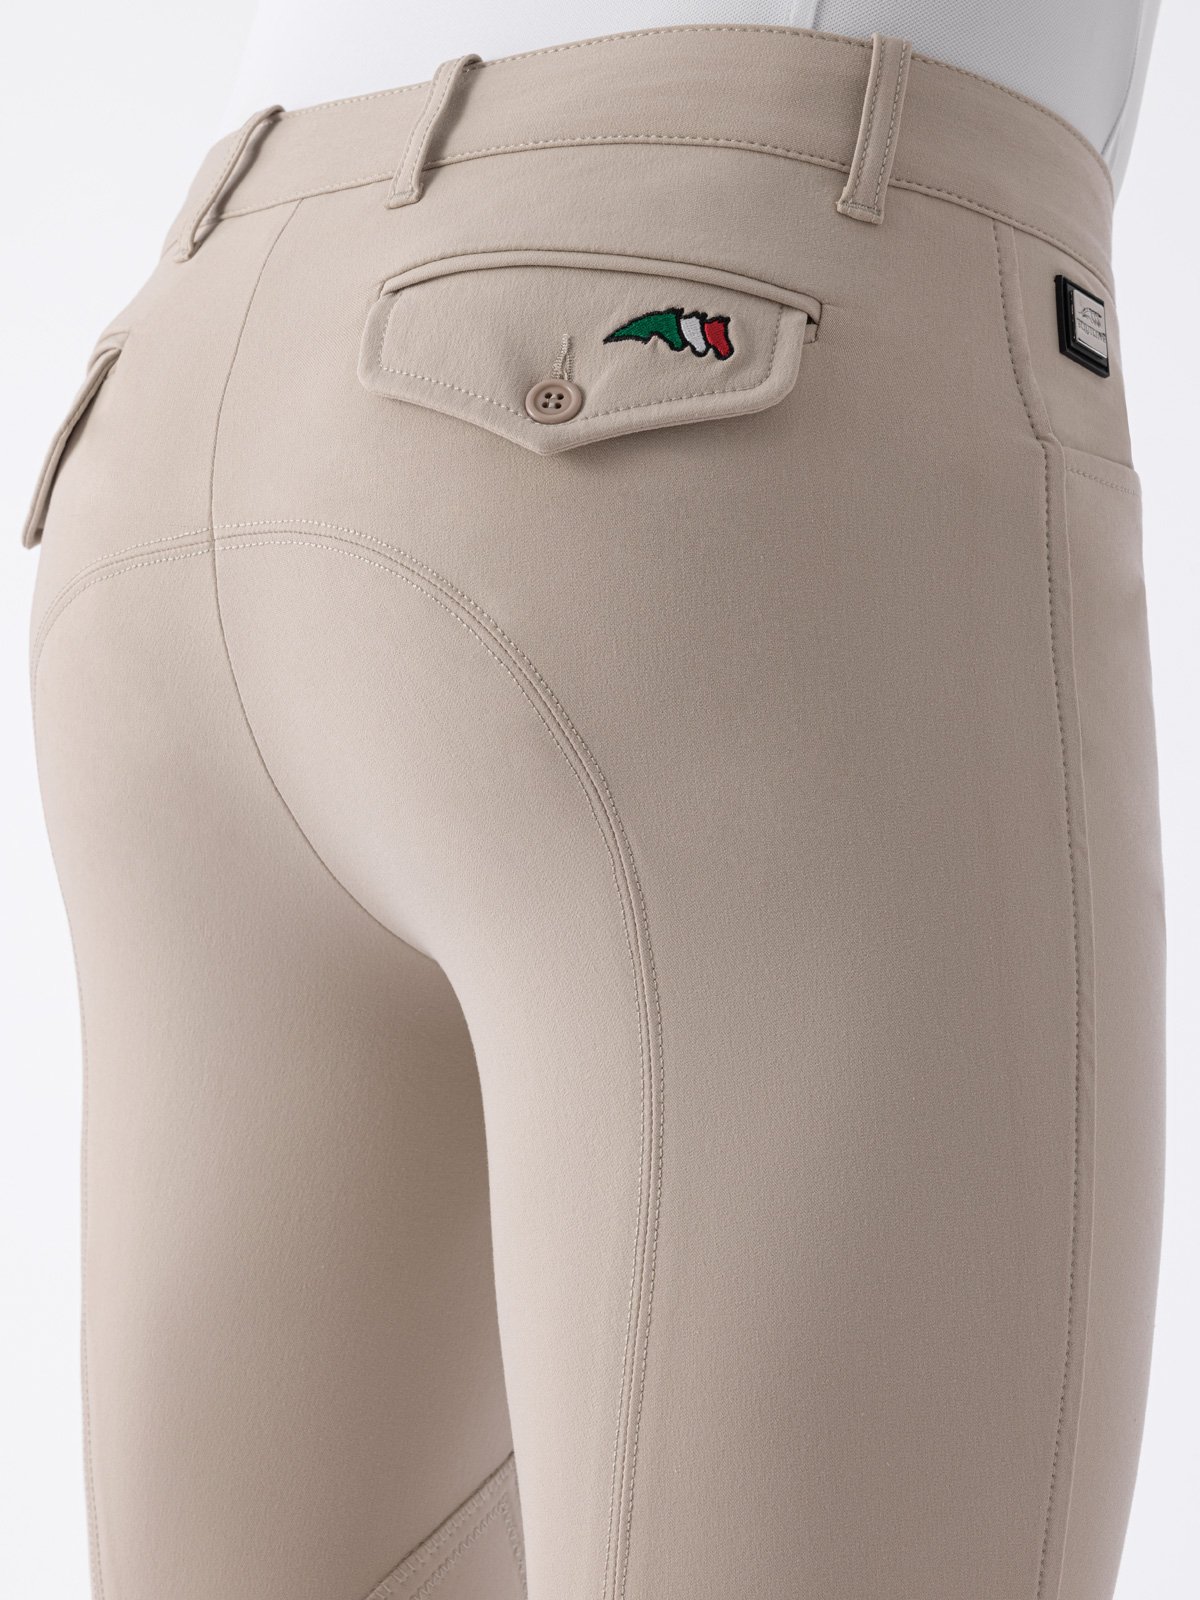 Pantalone Equiline uomo con toppe sul ginocchio modello Grafton  - foto 6